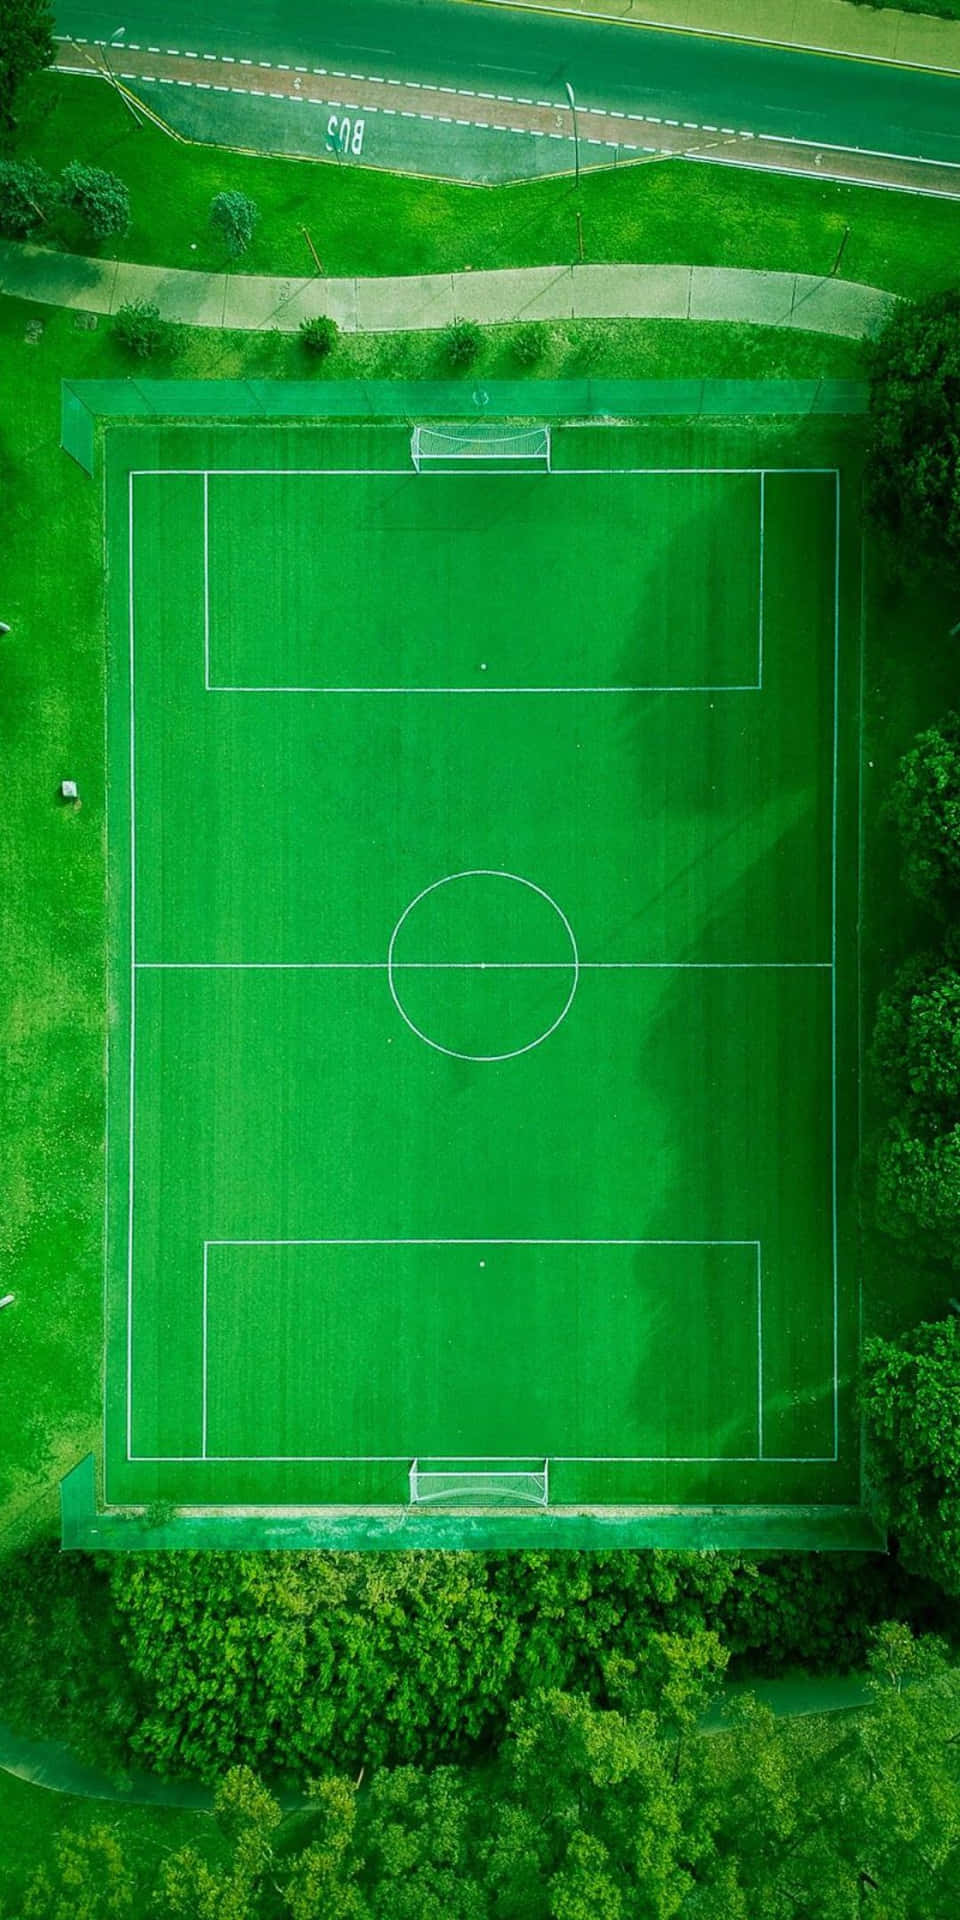 Fondode Pantalla De Campo De Fútbol Capturado Por Un Dron En El Pixel 3.